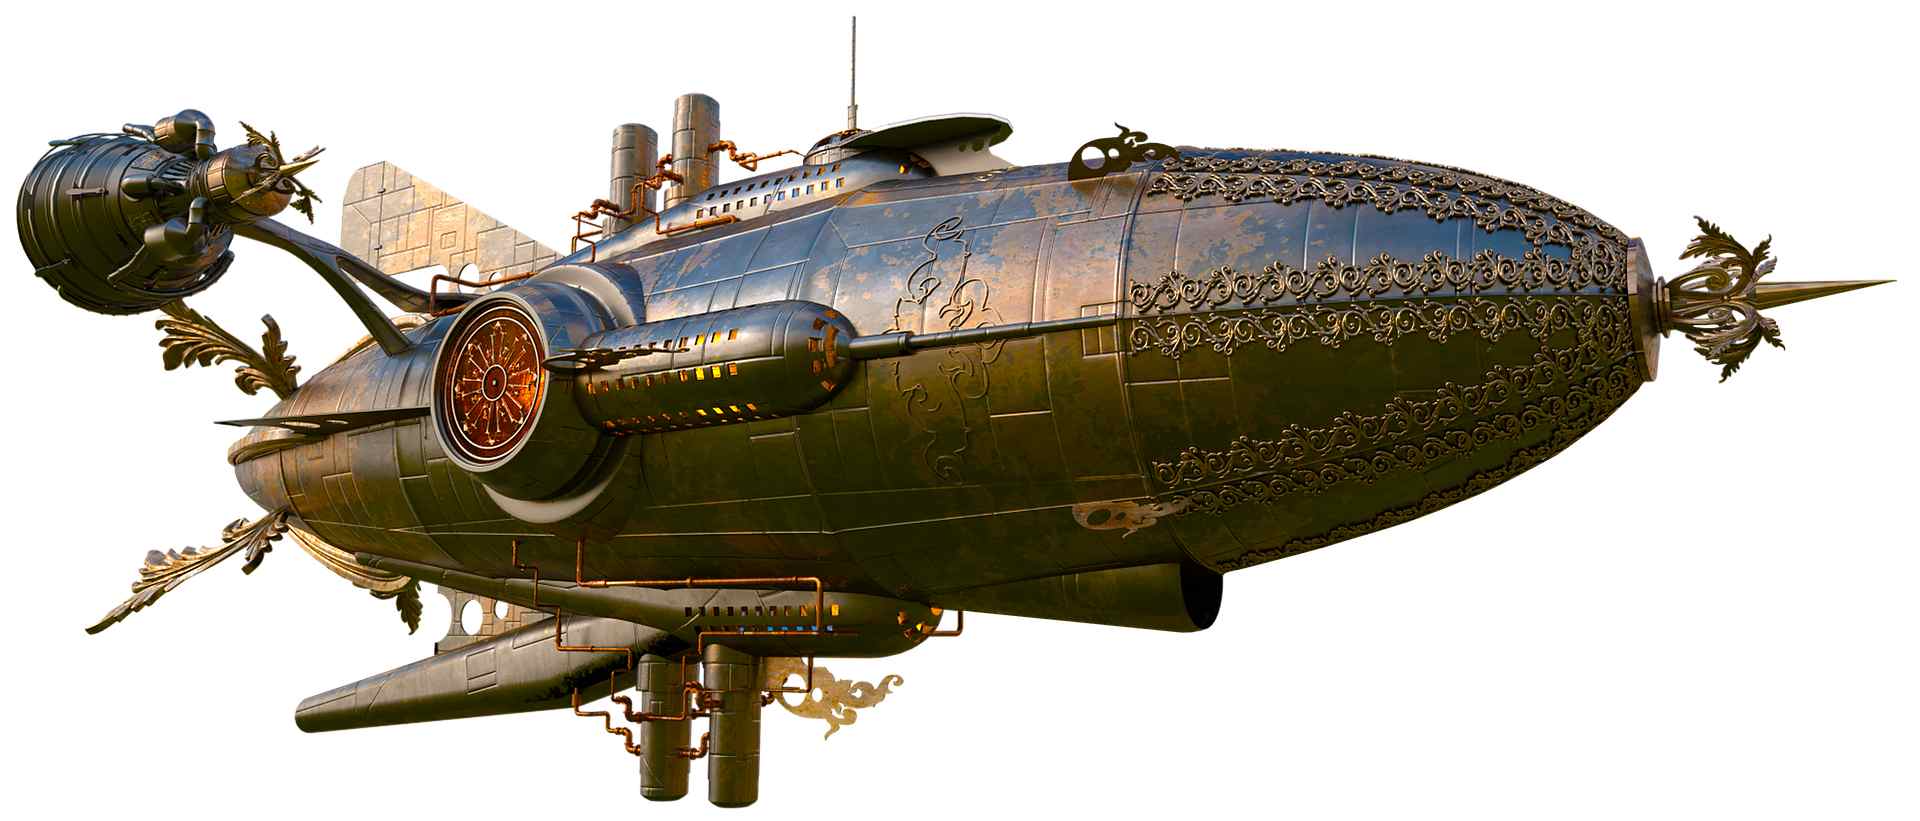 zeppelin-balón-vzducholod-steampunk-6108432-freepixabay